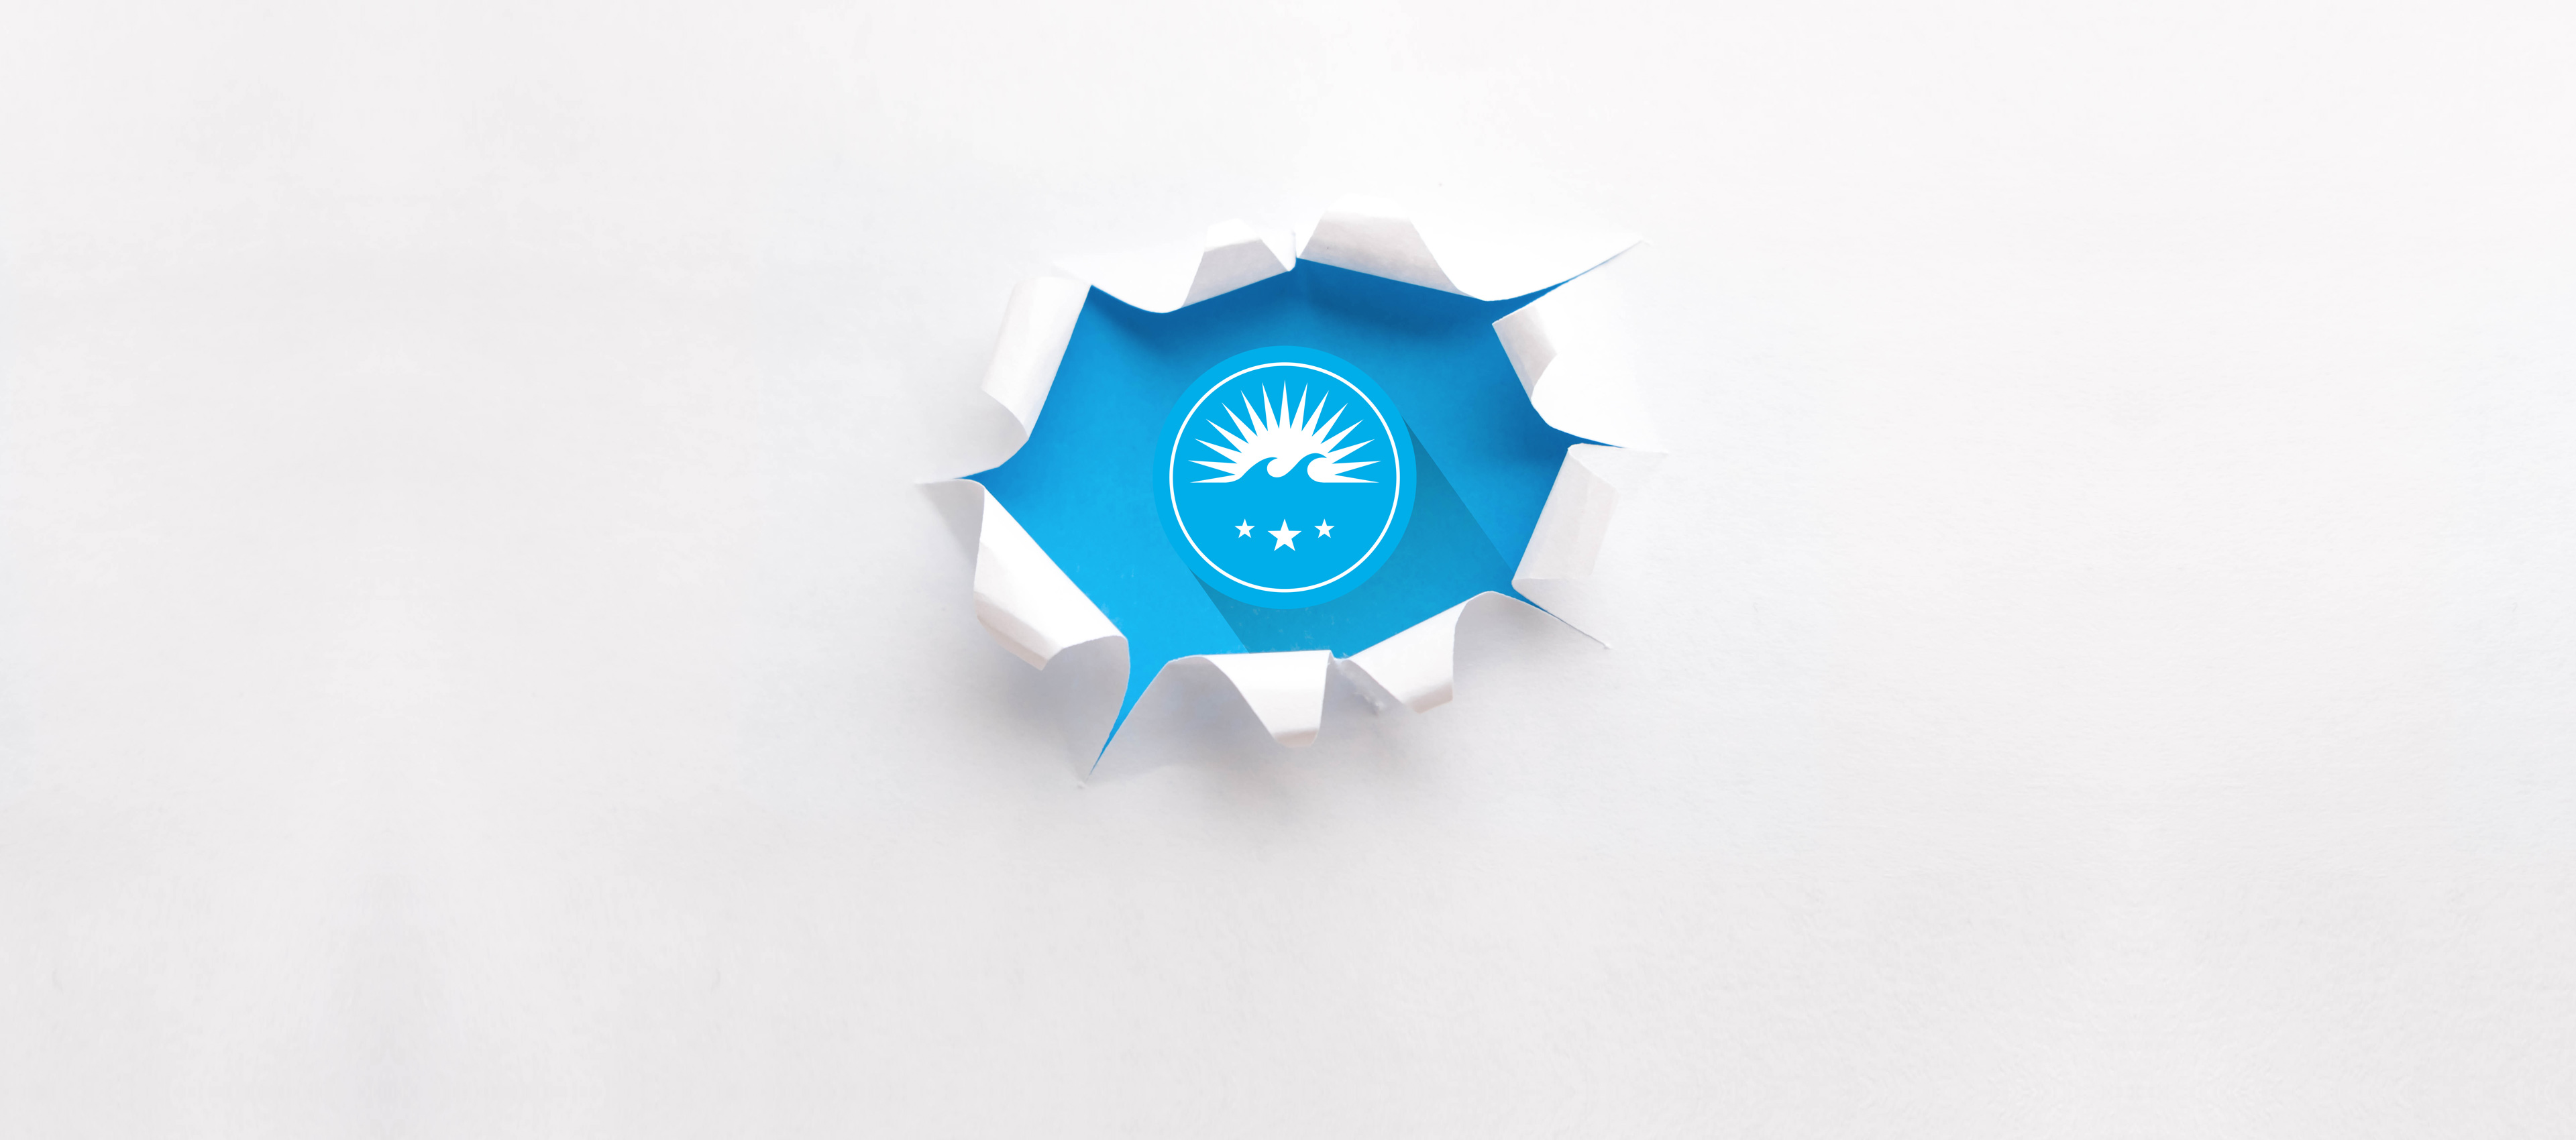 Blaues HOCHZWEI-Logo erkennbar durch Loch im weißen Papier